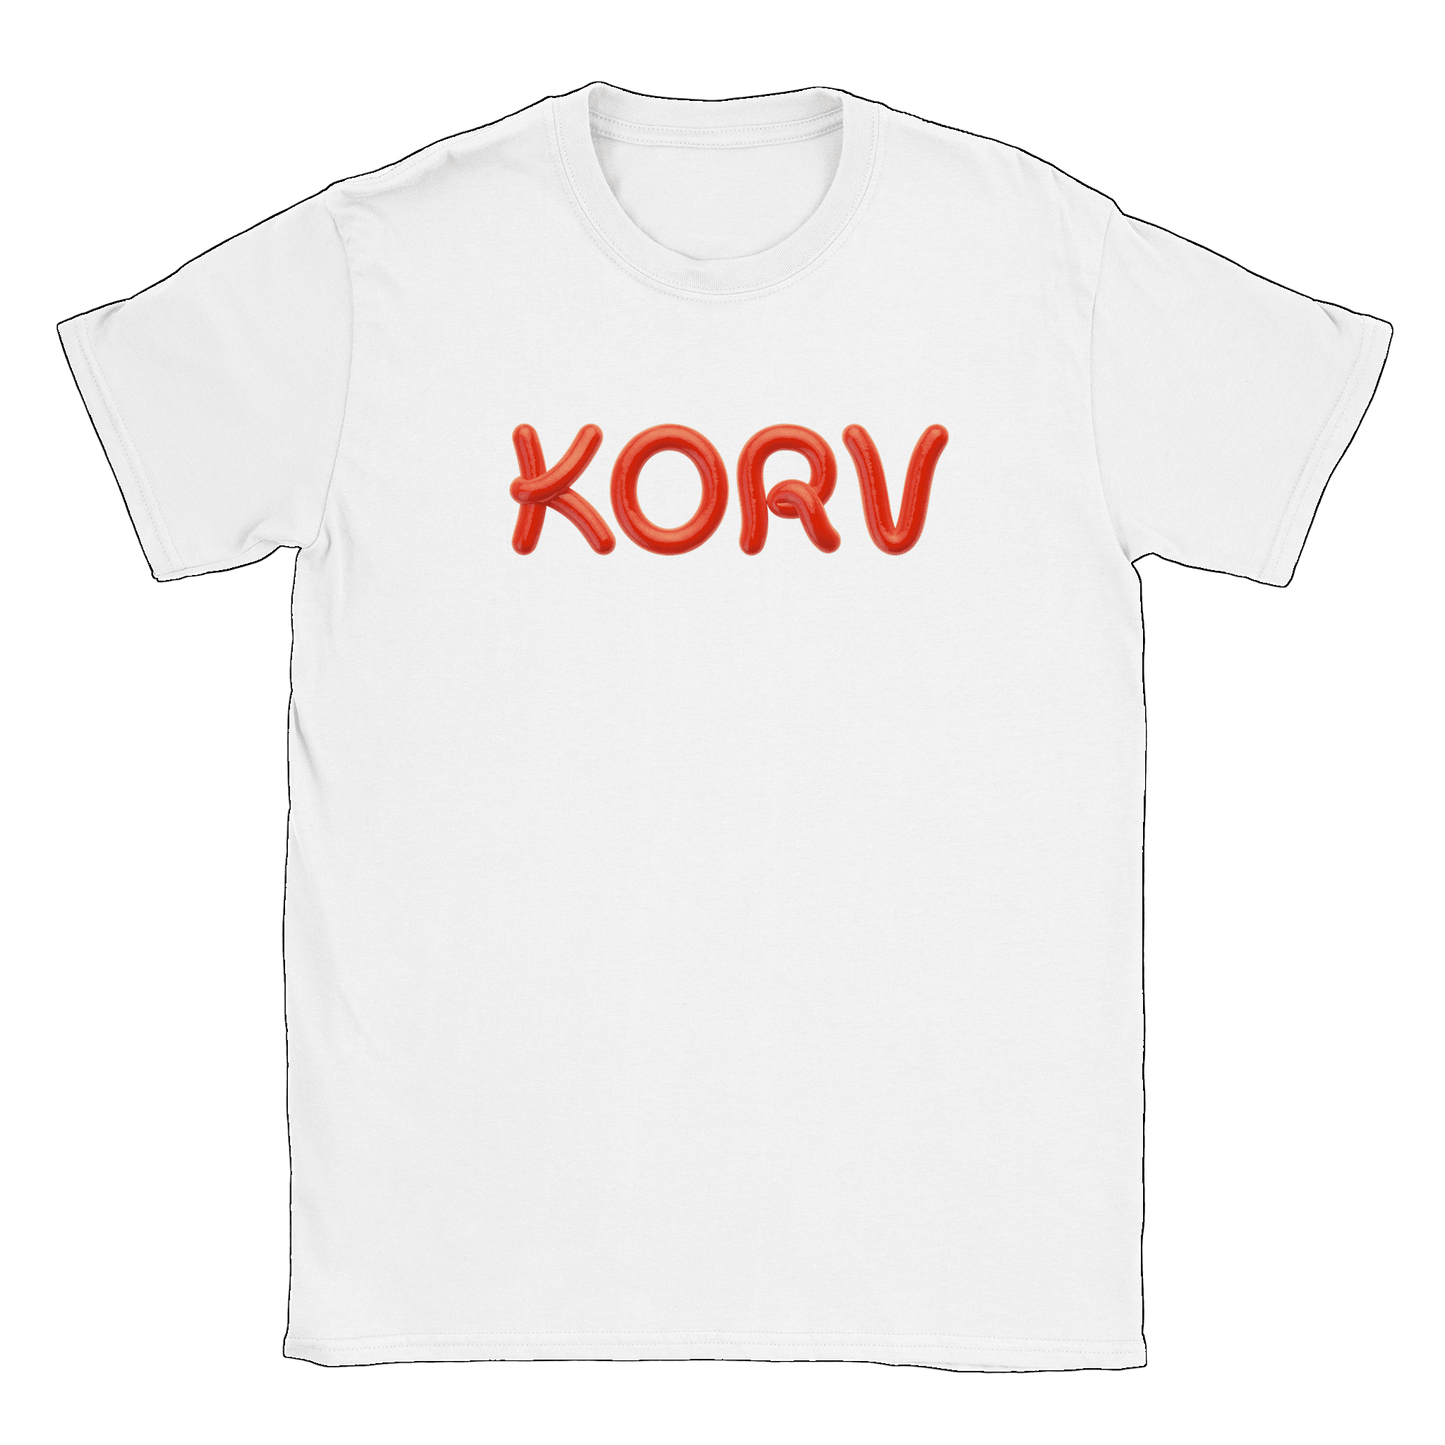 Korv - T-shirt Vit